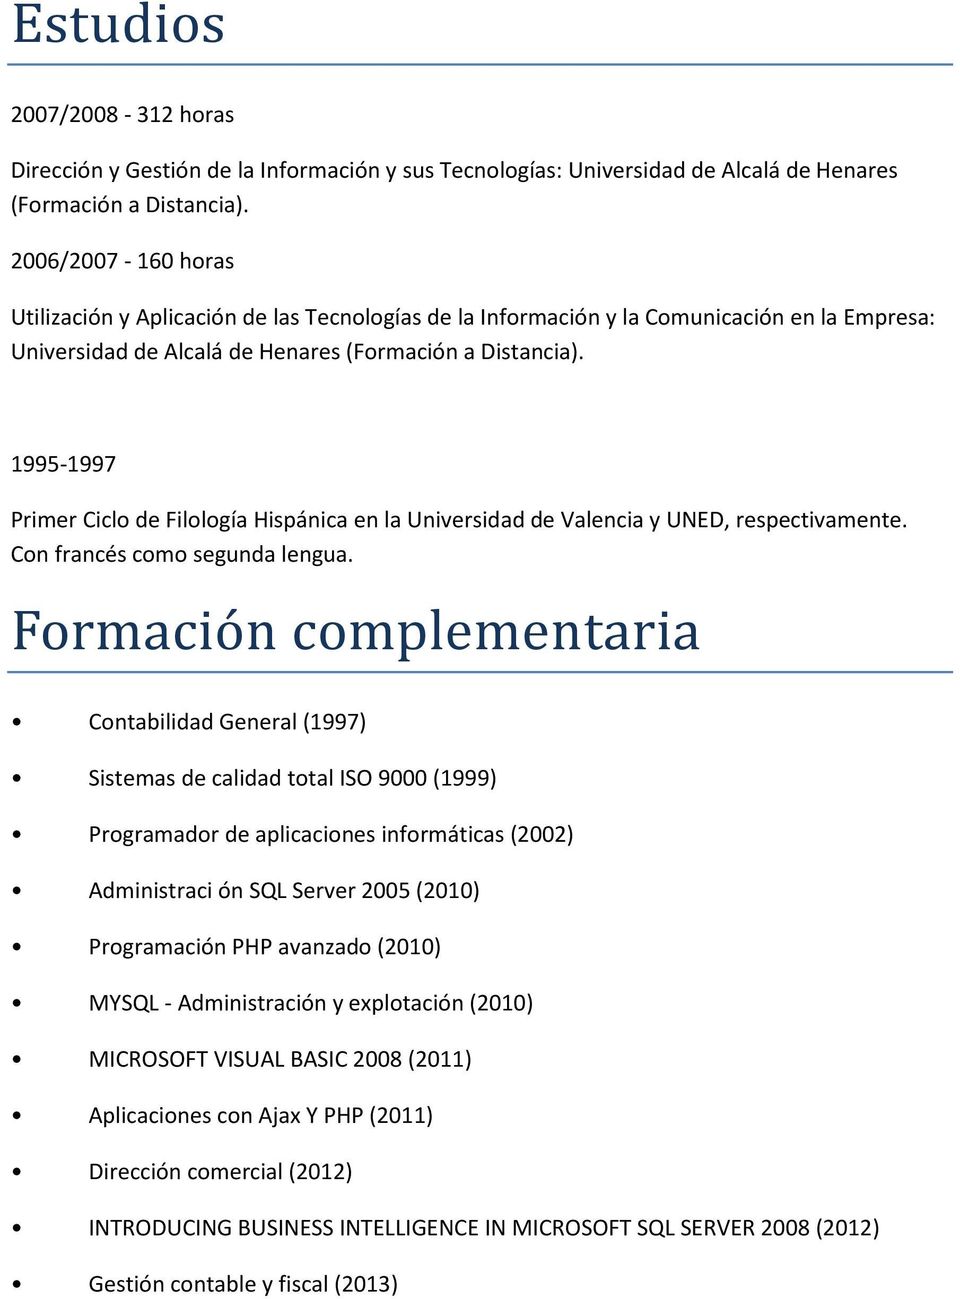 1995-1997 Primer Ciclo de Filología Hispánica en la Universidad de Valencia y UNED, respectivamente. Con francés como segunda lengua.